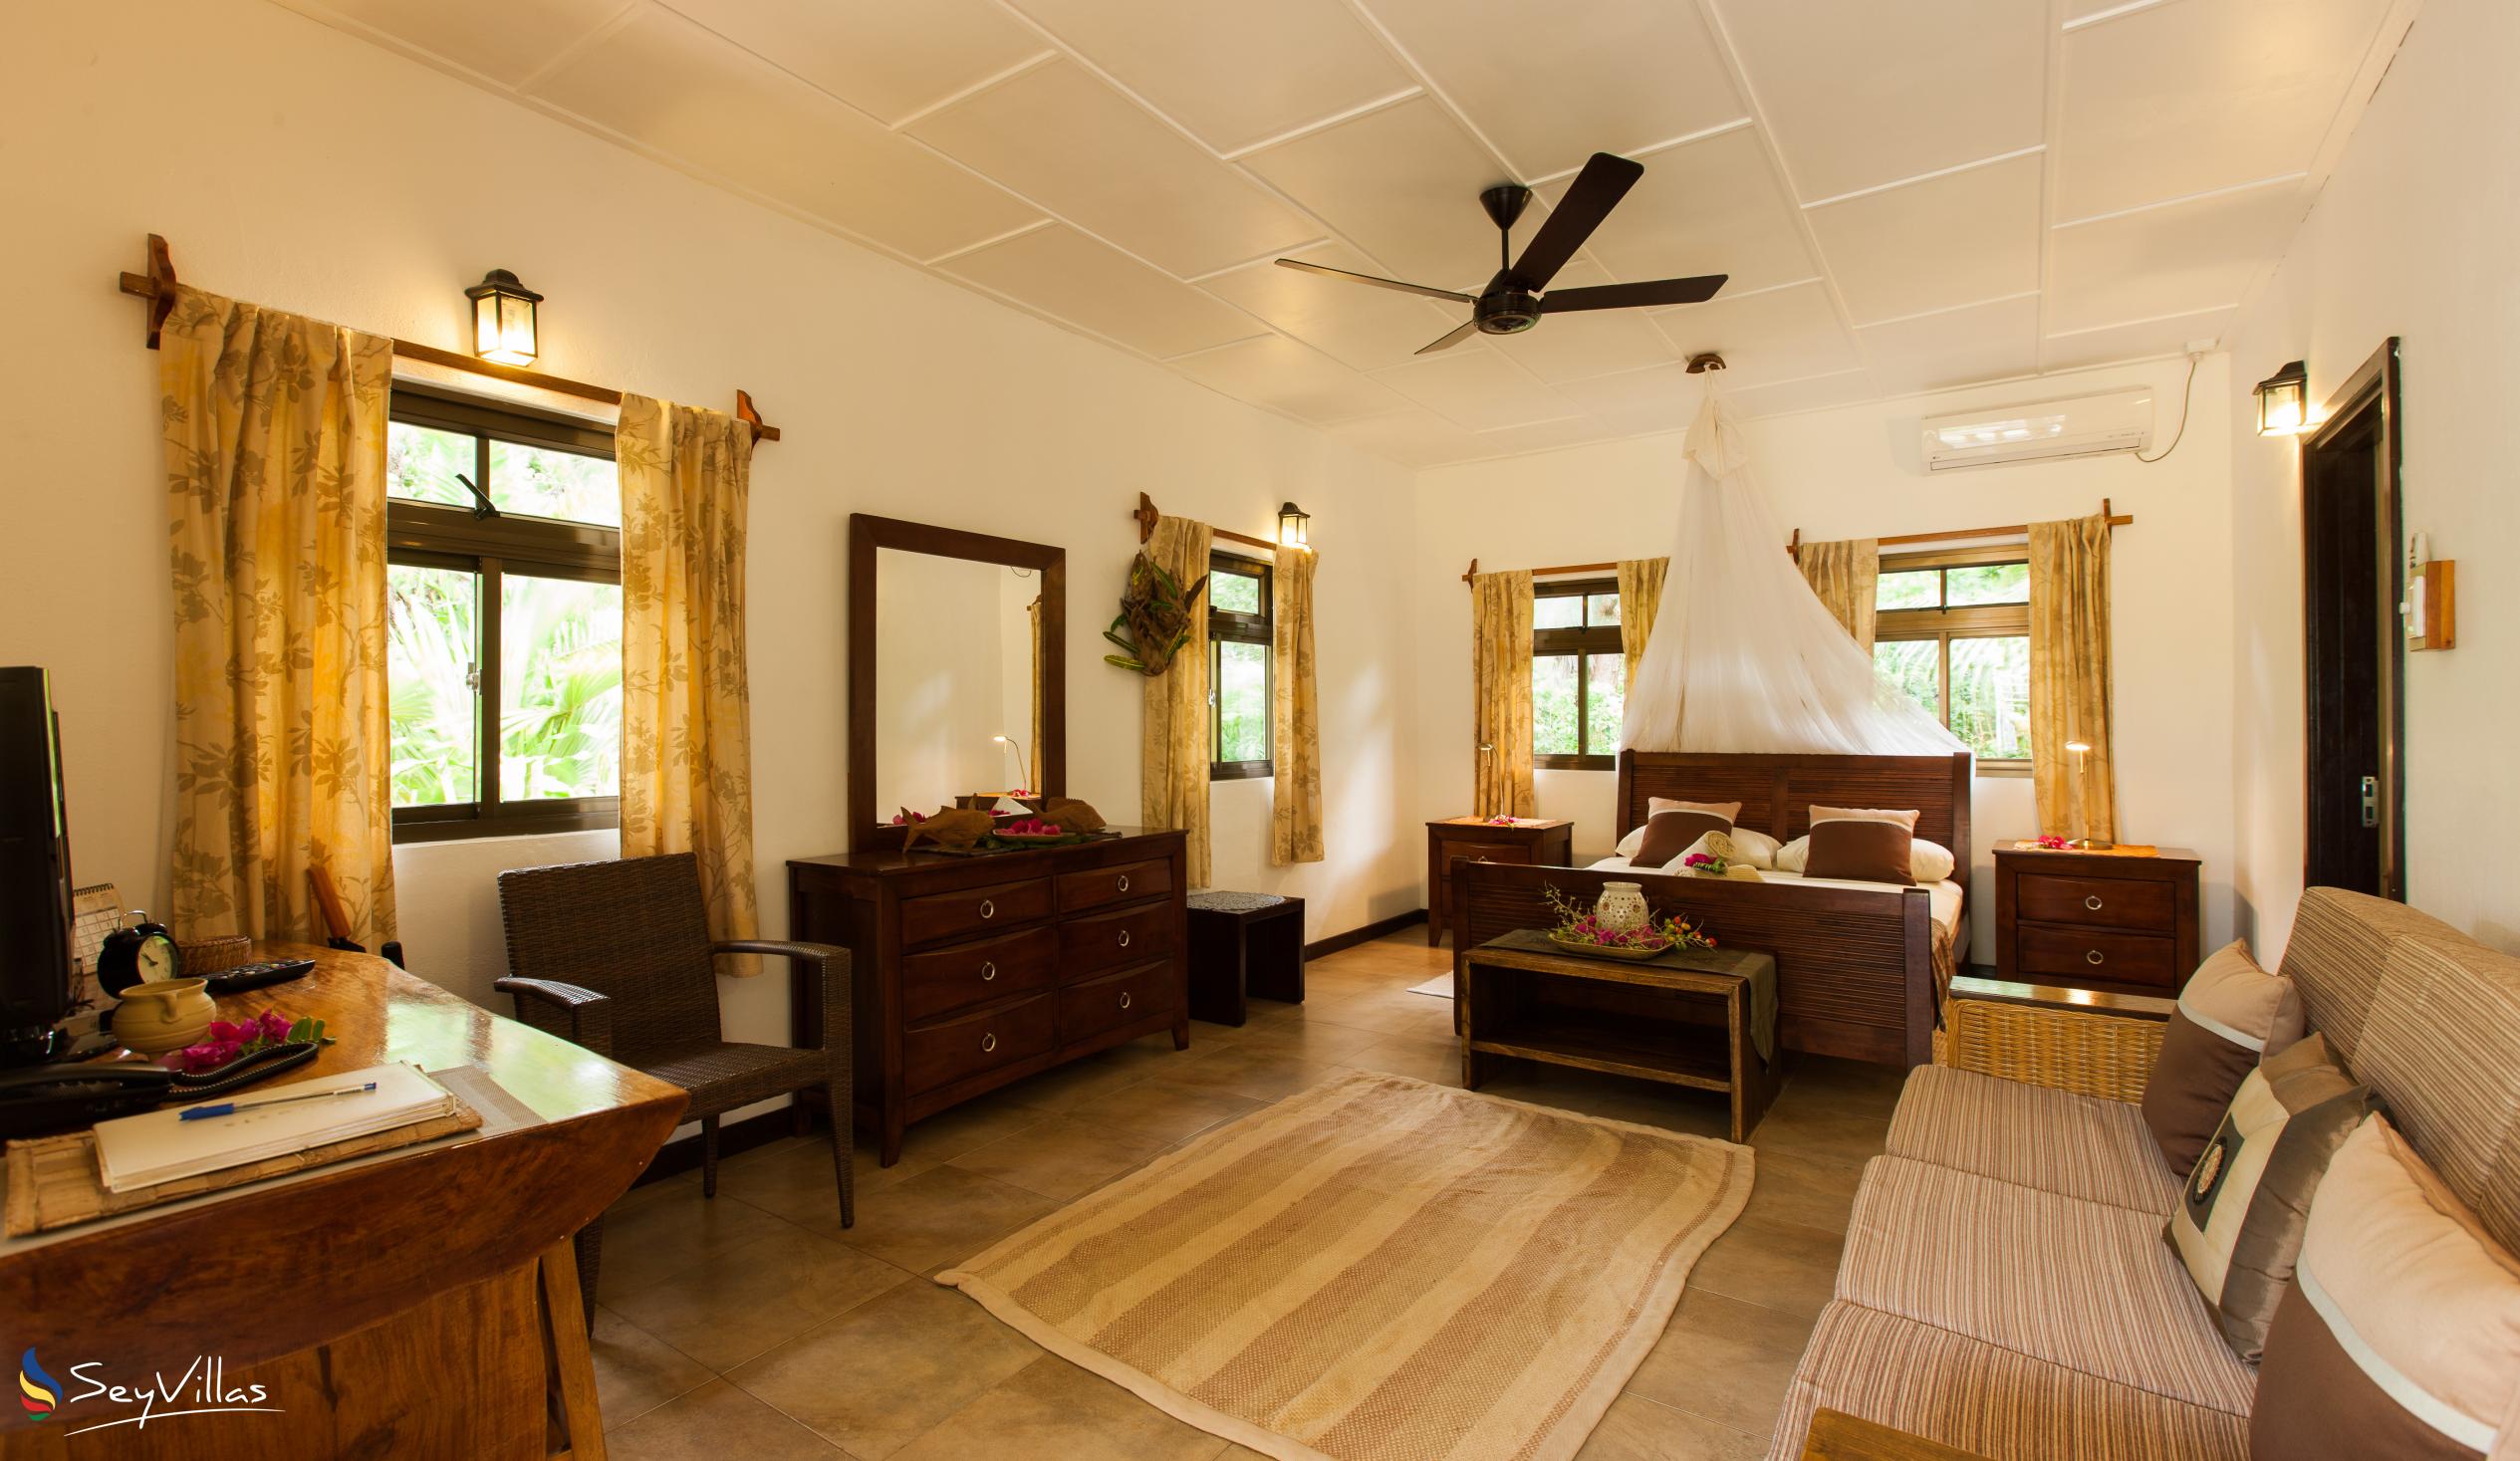 Photo 111: Domaine Les Rochers - 2-Bedroom Bungalow Palmier - La Digue (Seychelles)